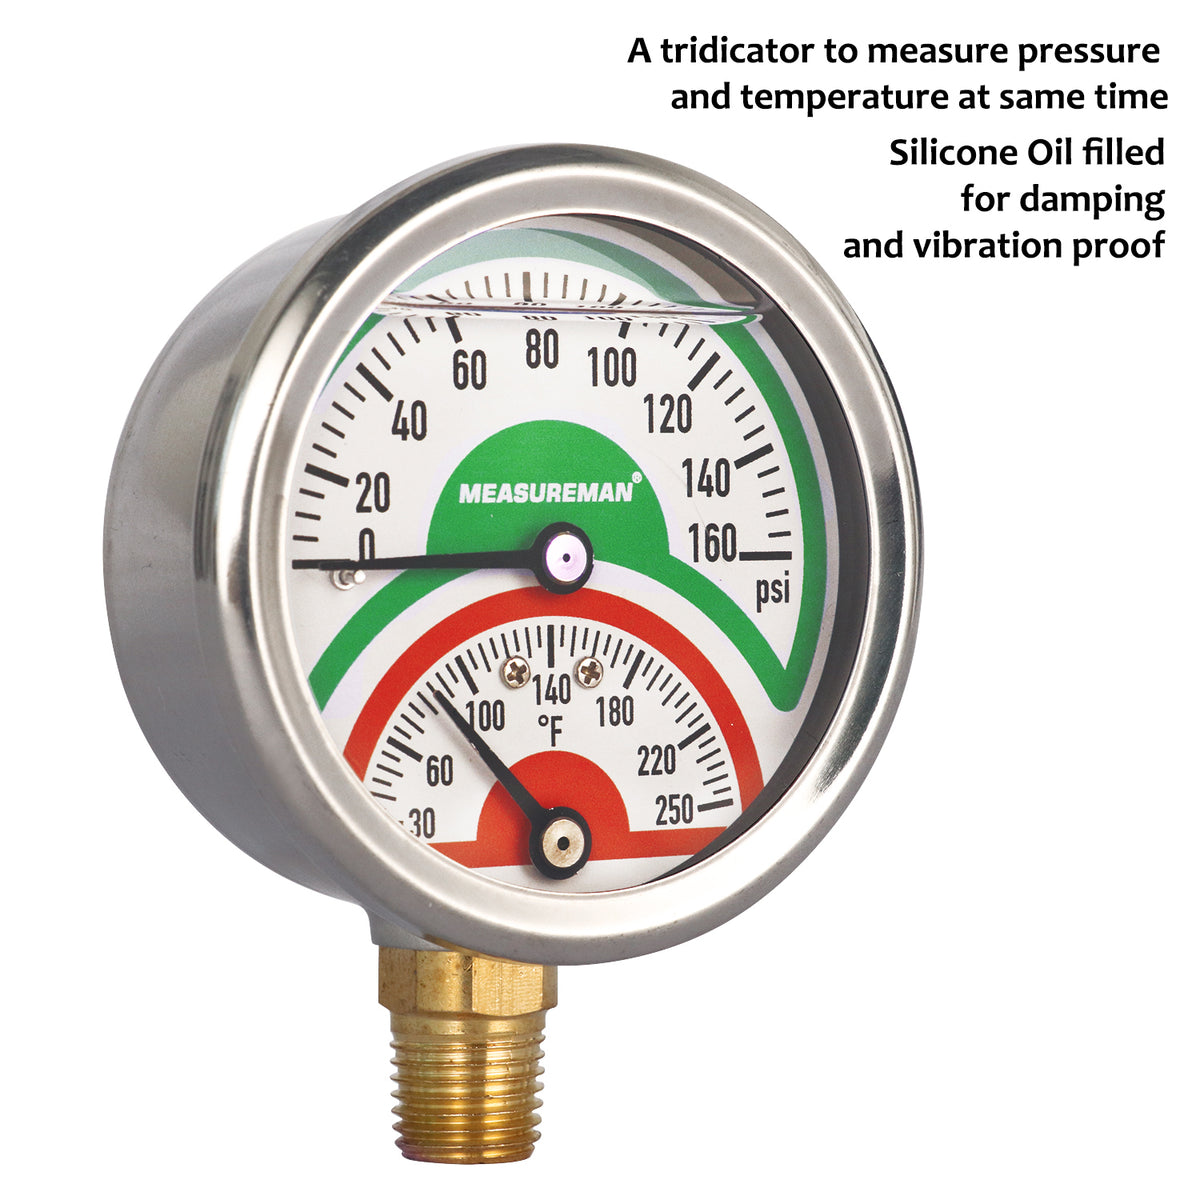 2 1/2" Tridicator Thermo-Manometer Temperature Pressure Gauge 0-160psi 30-250 F 